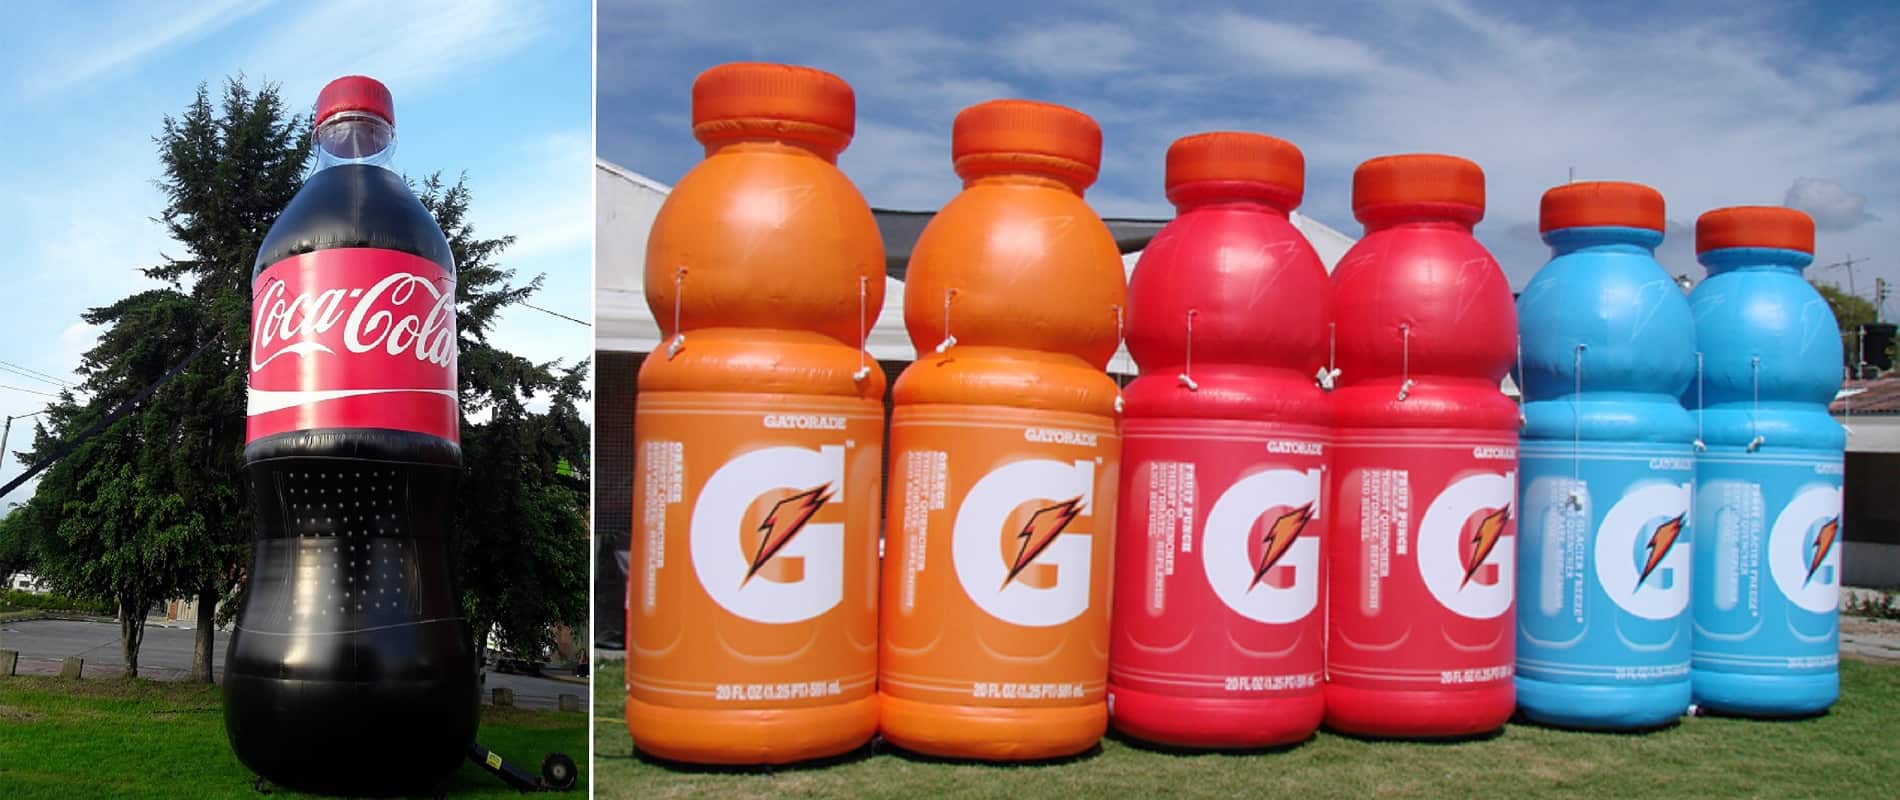 Custom Giant Inflatable Bottles